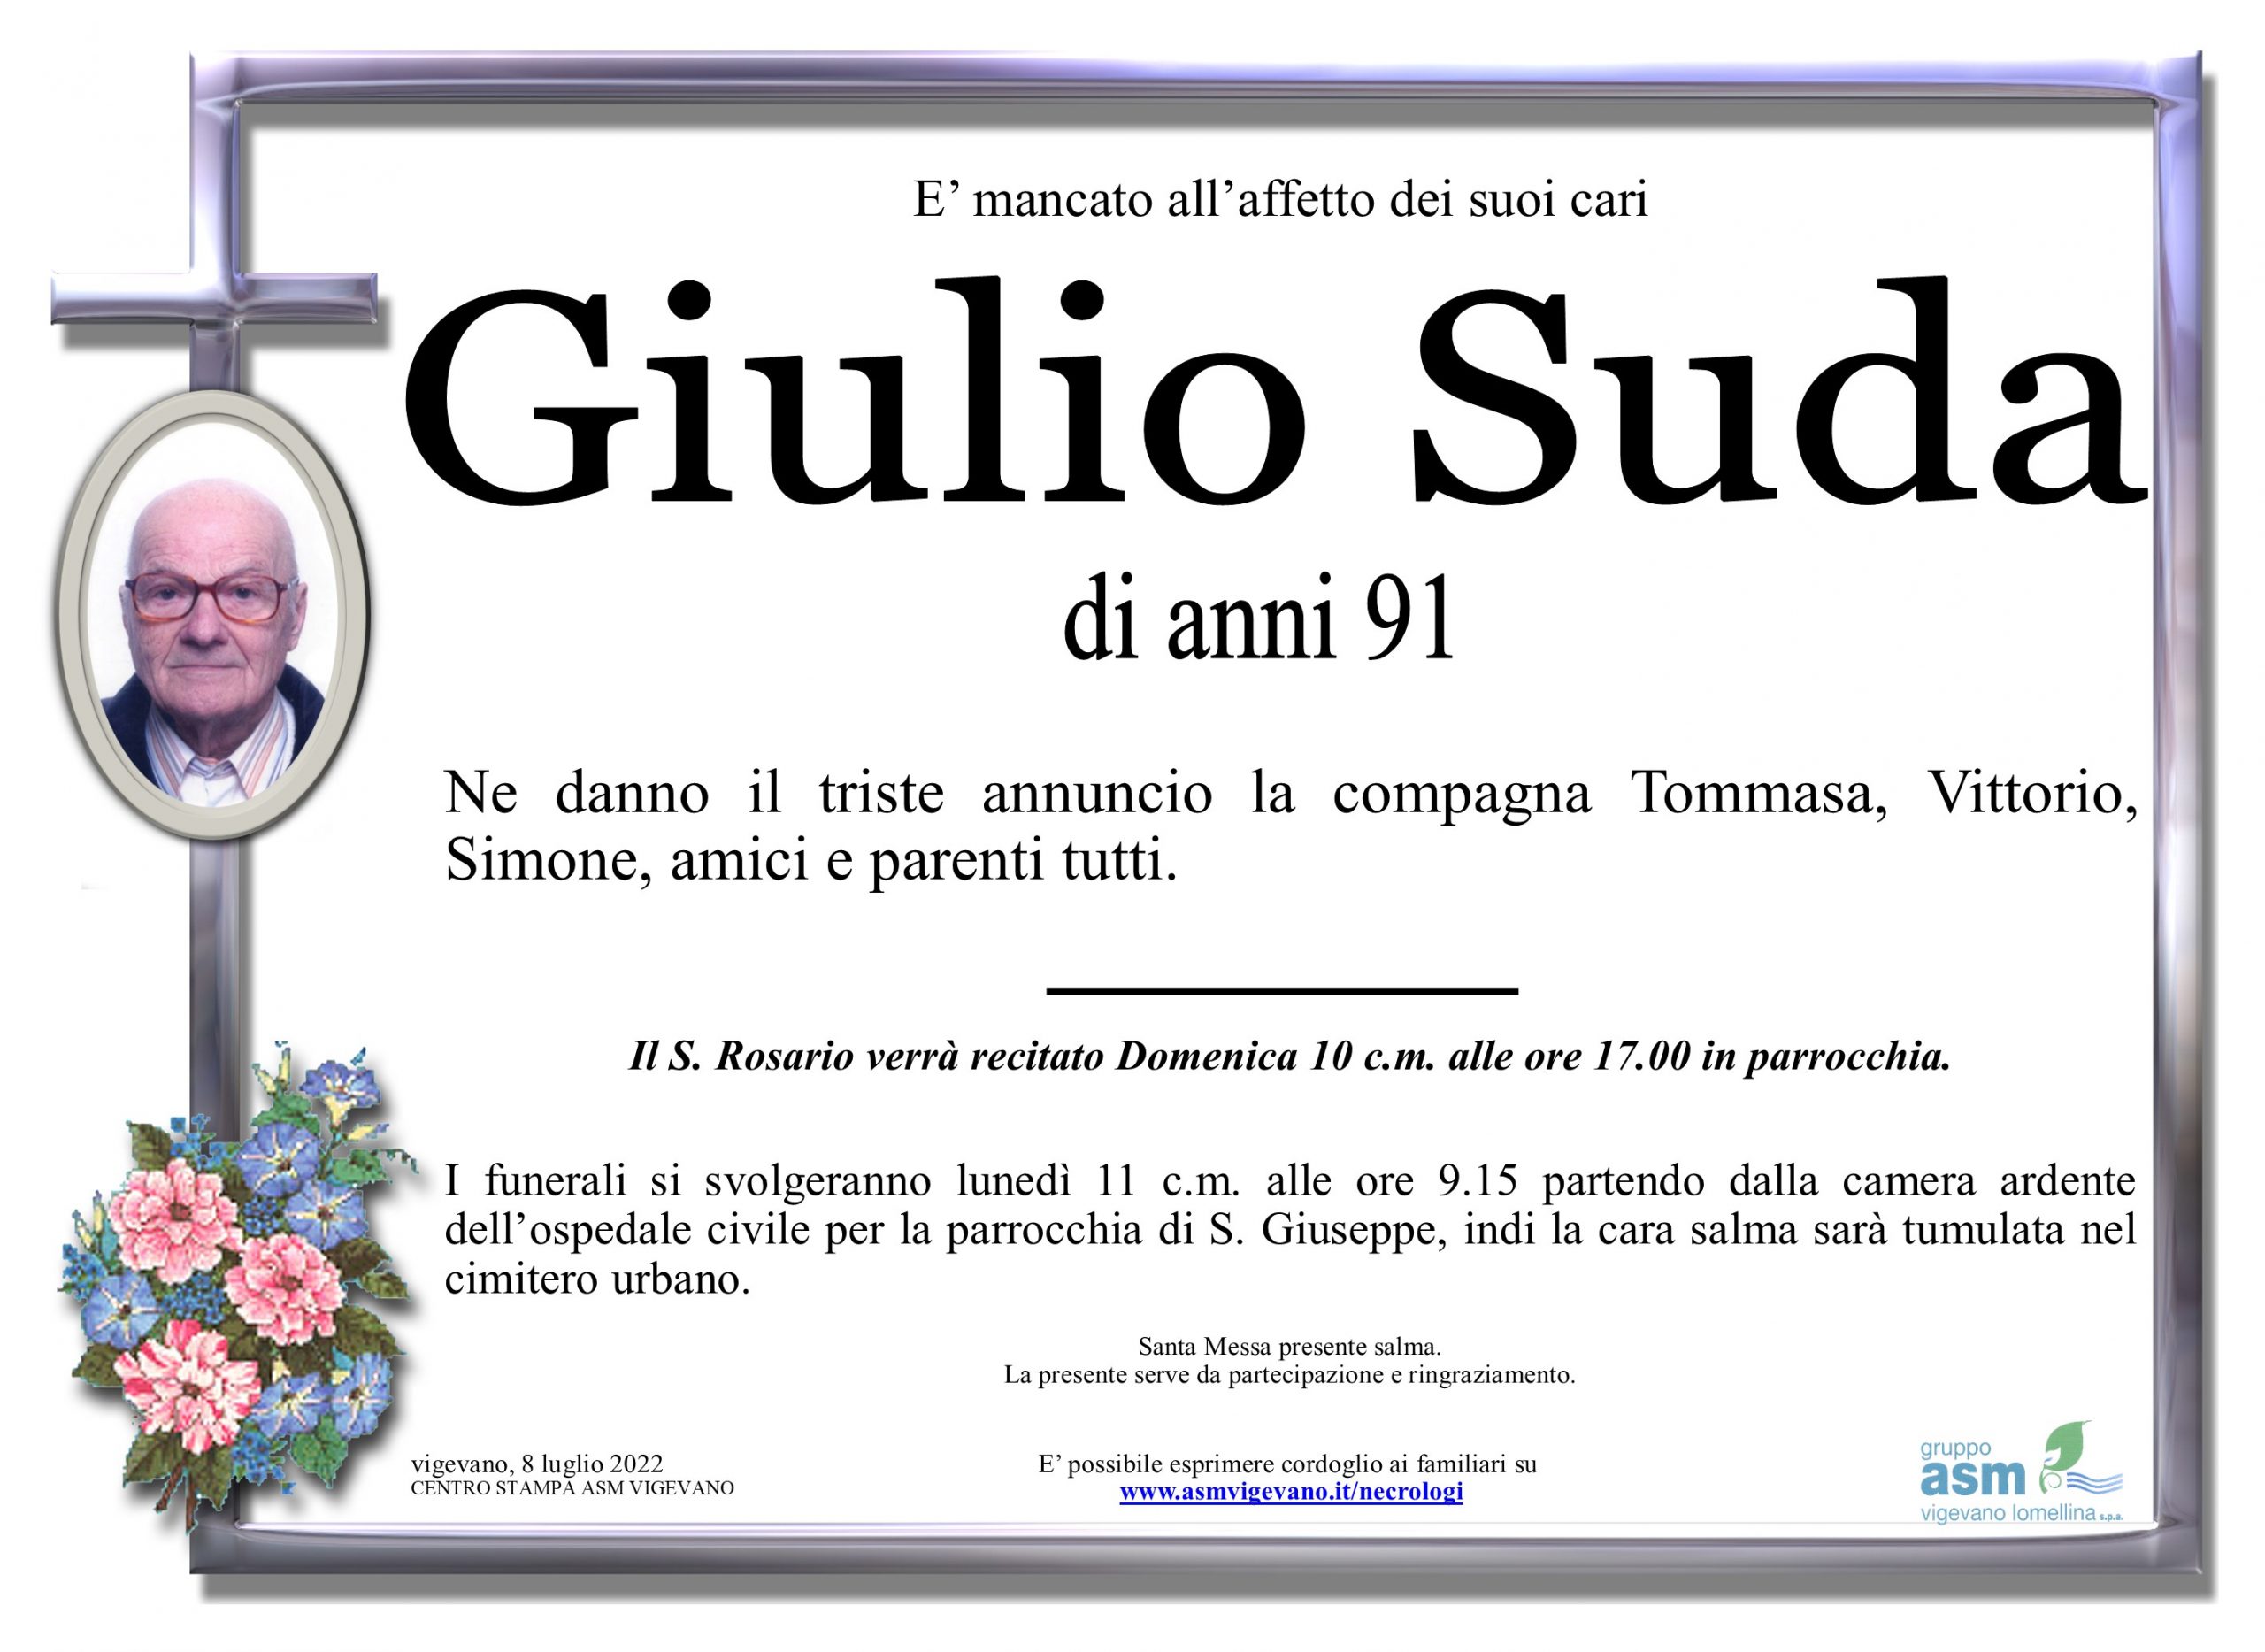 Giulio Suda